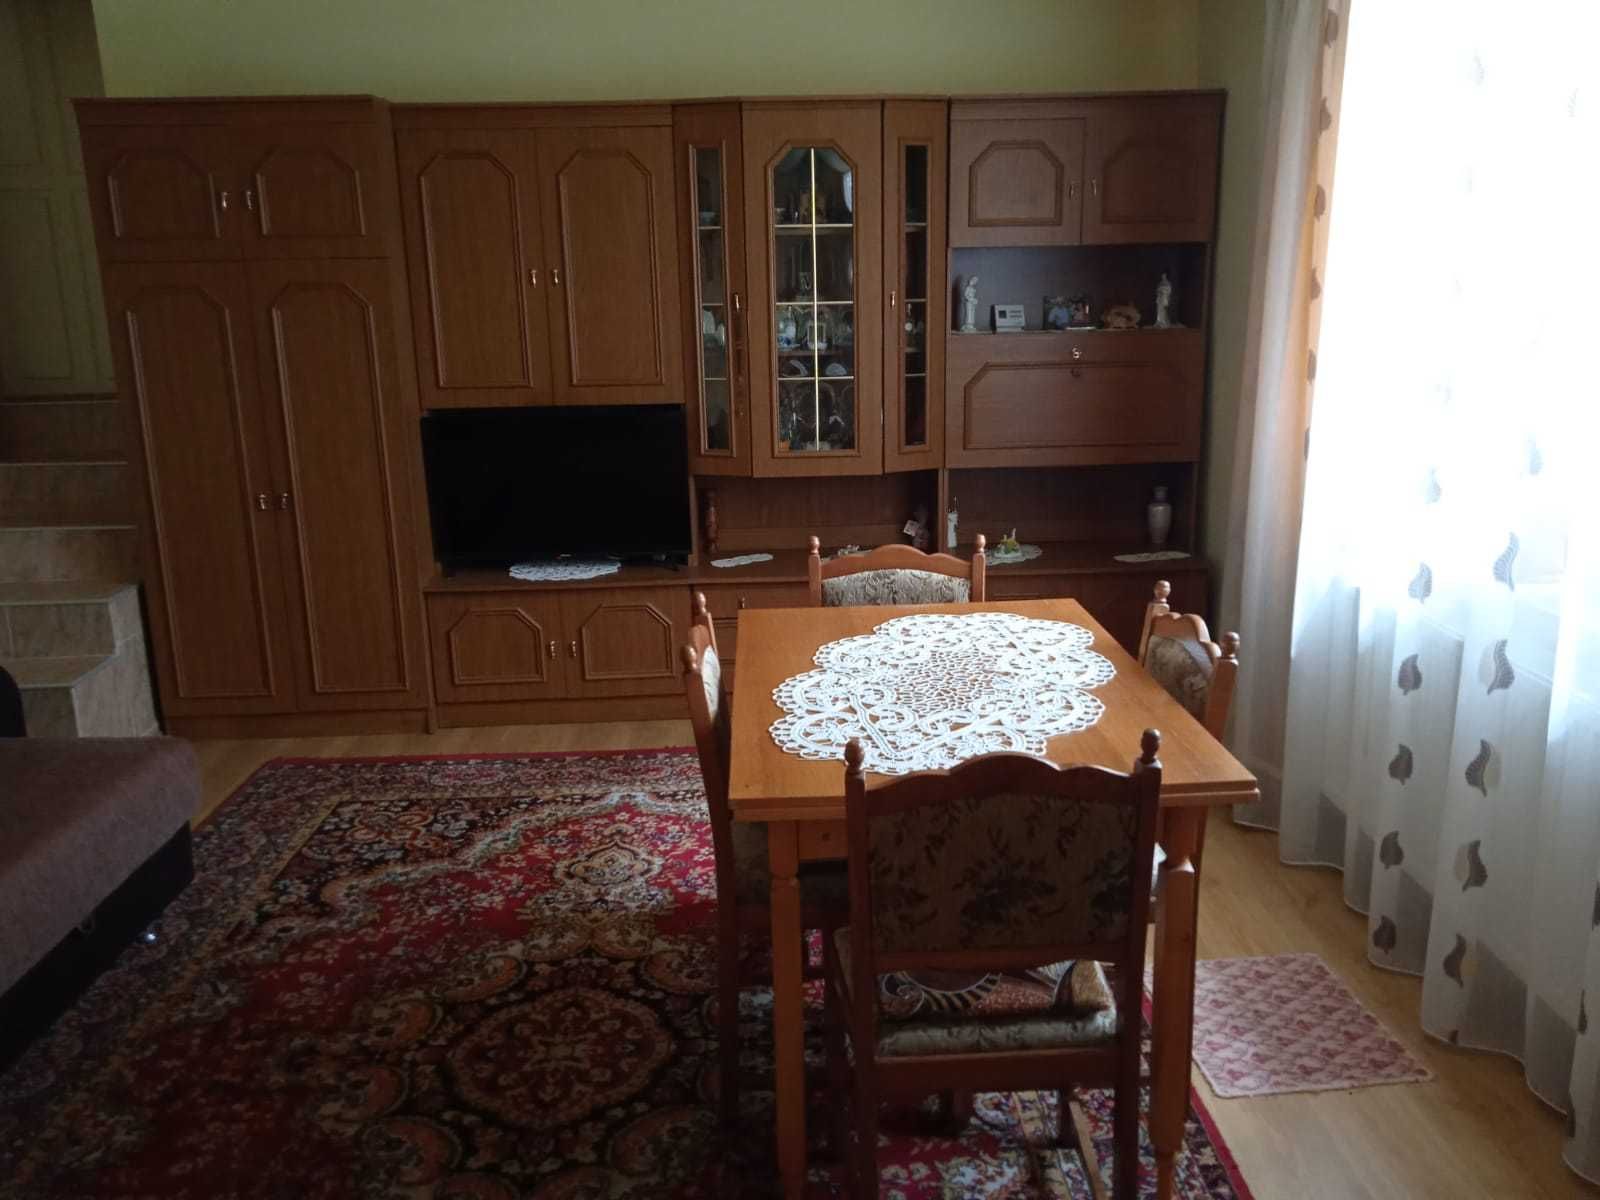 De vânzare casă Bălăușeri 120 000 € negociabil.